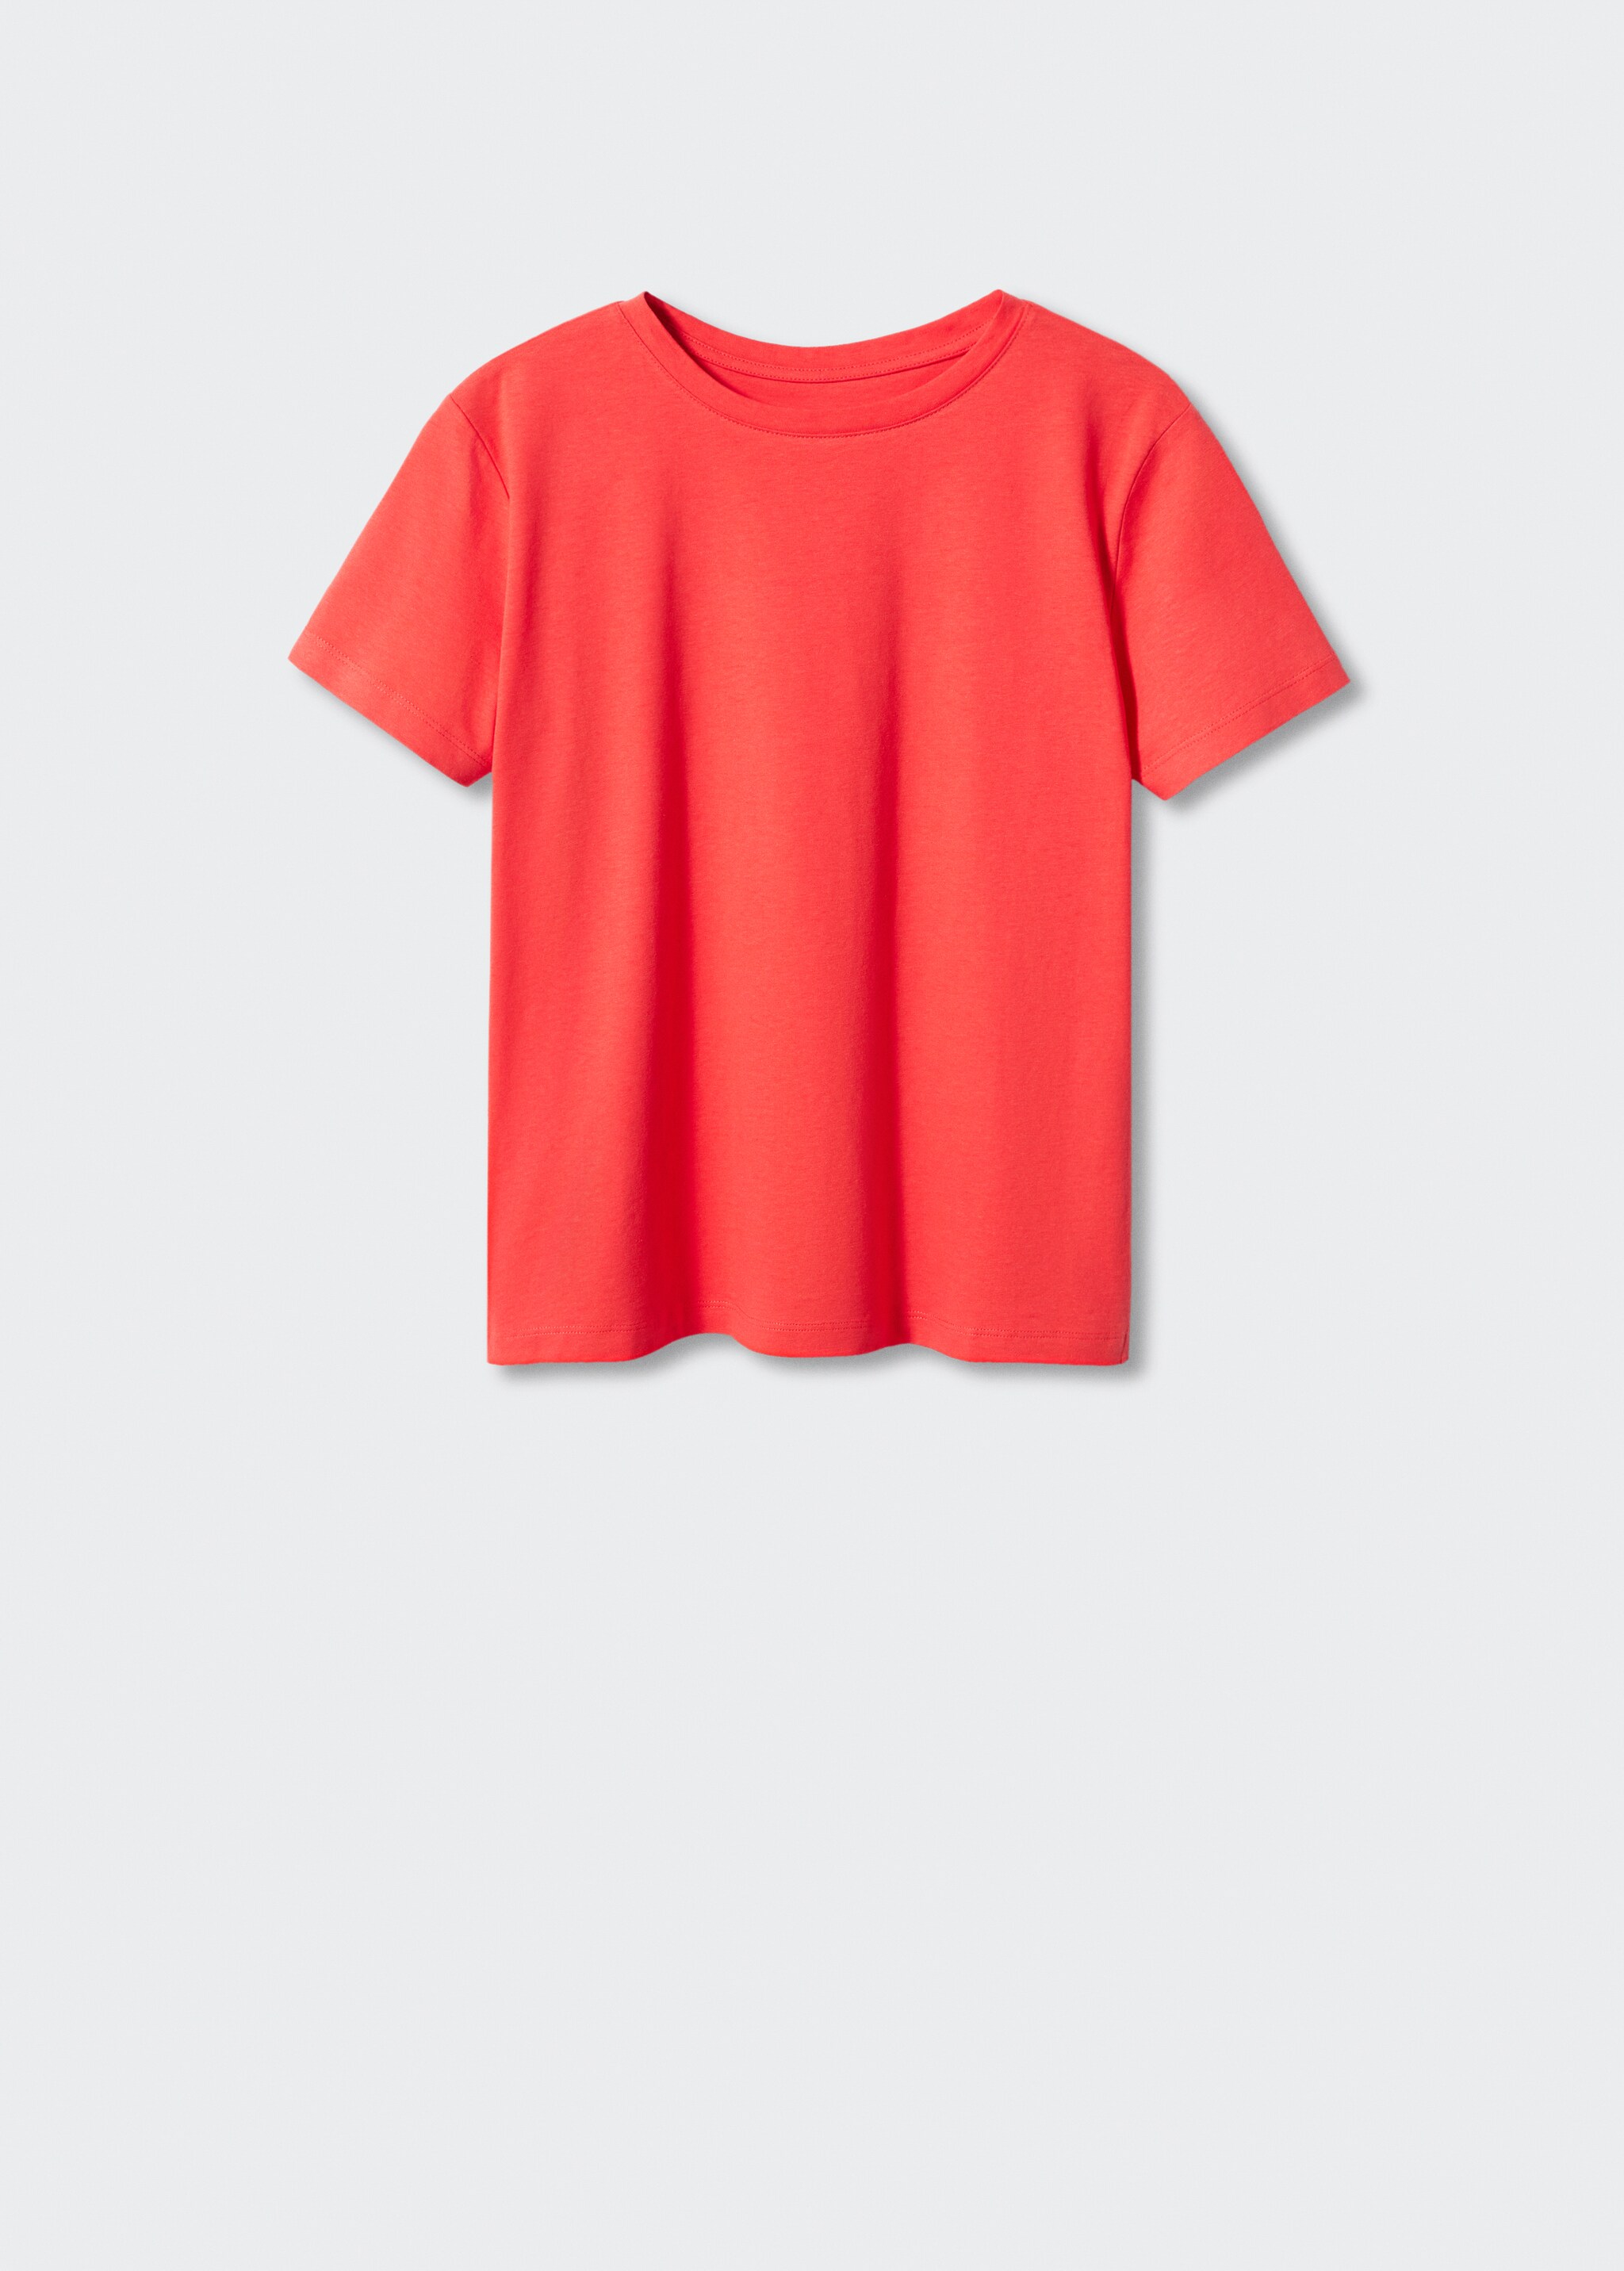 Camiseta 100% algodón  - Artículo sin modelo